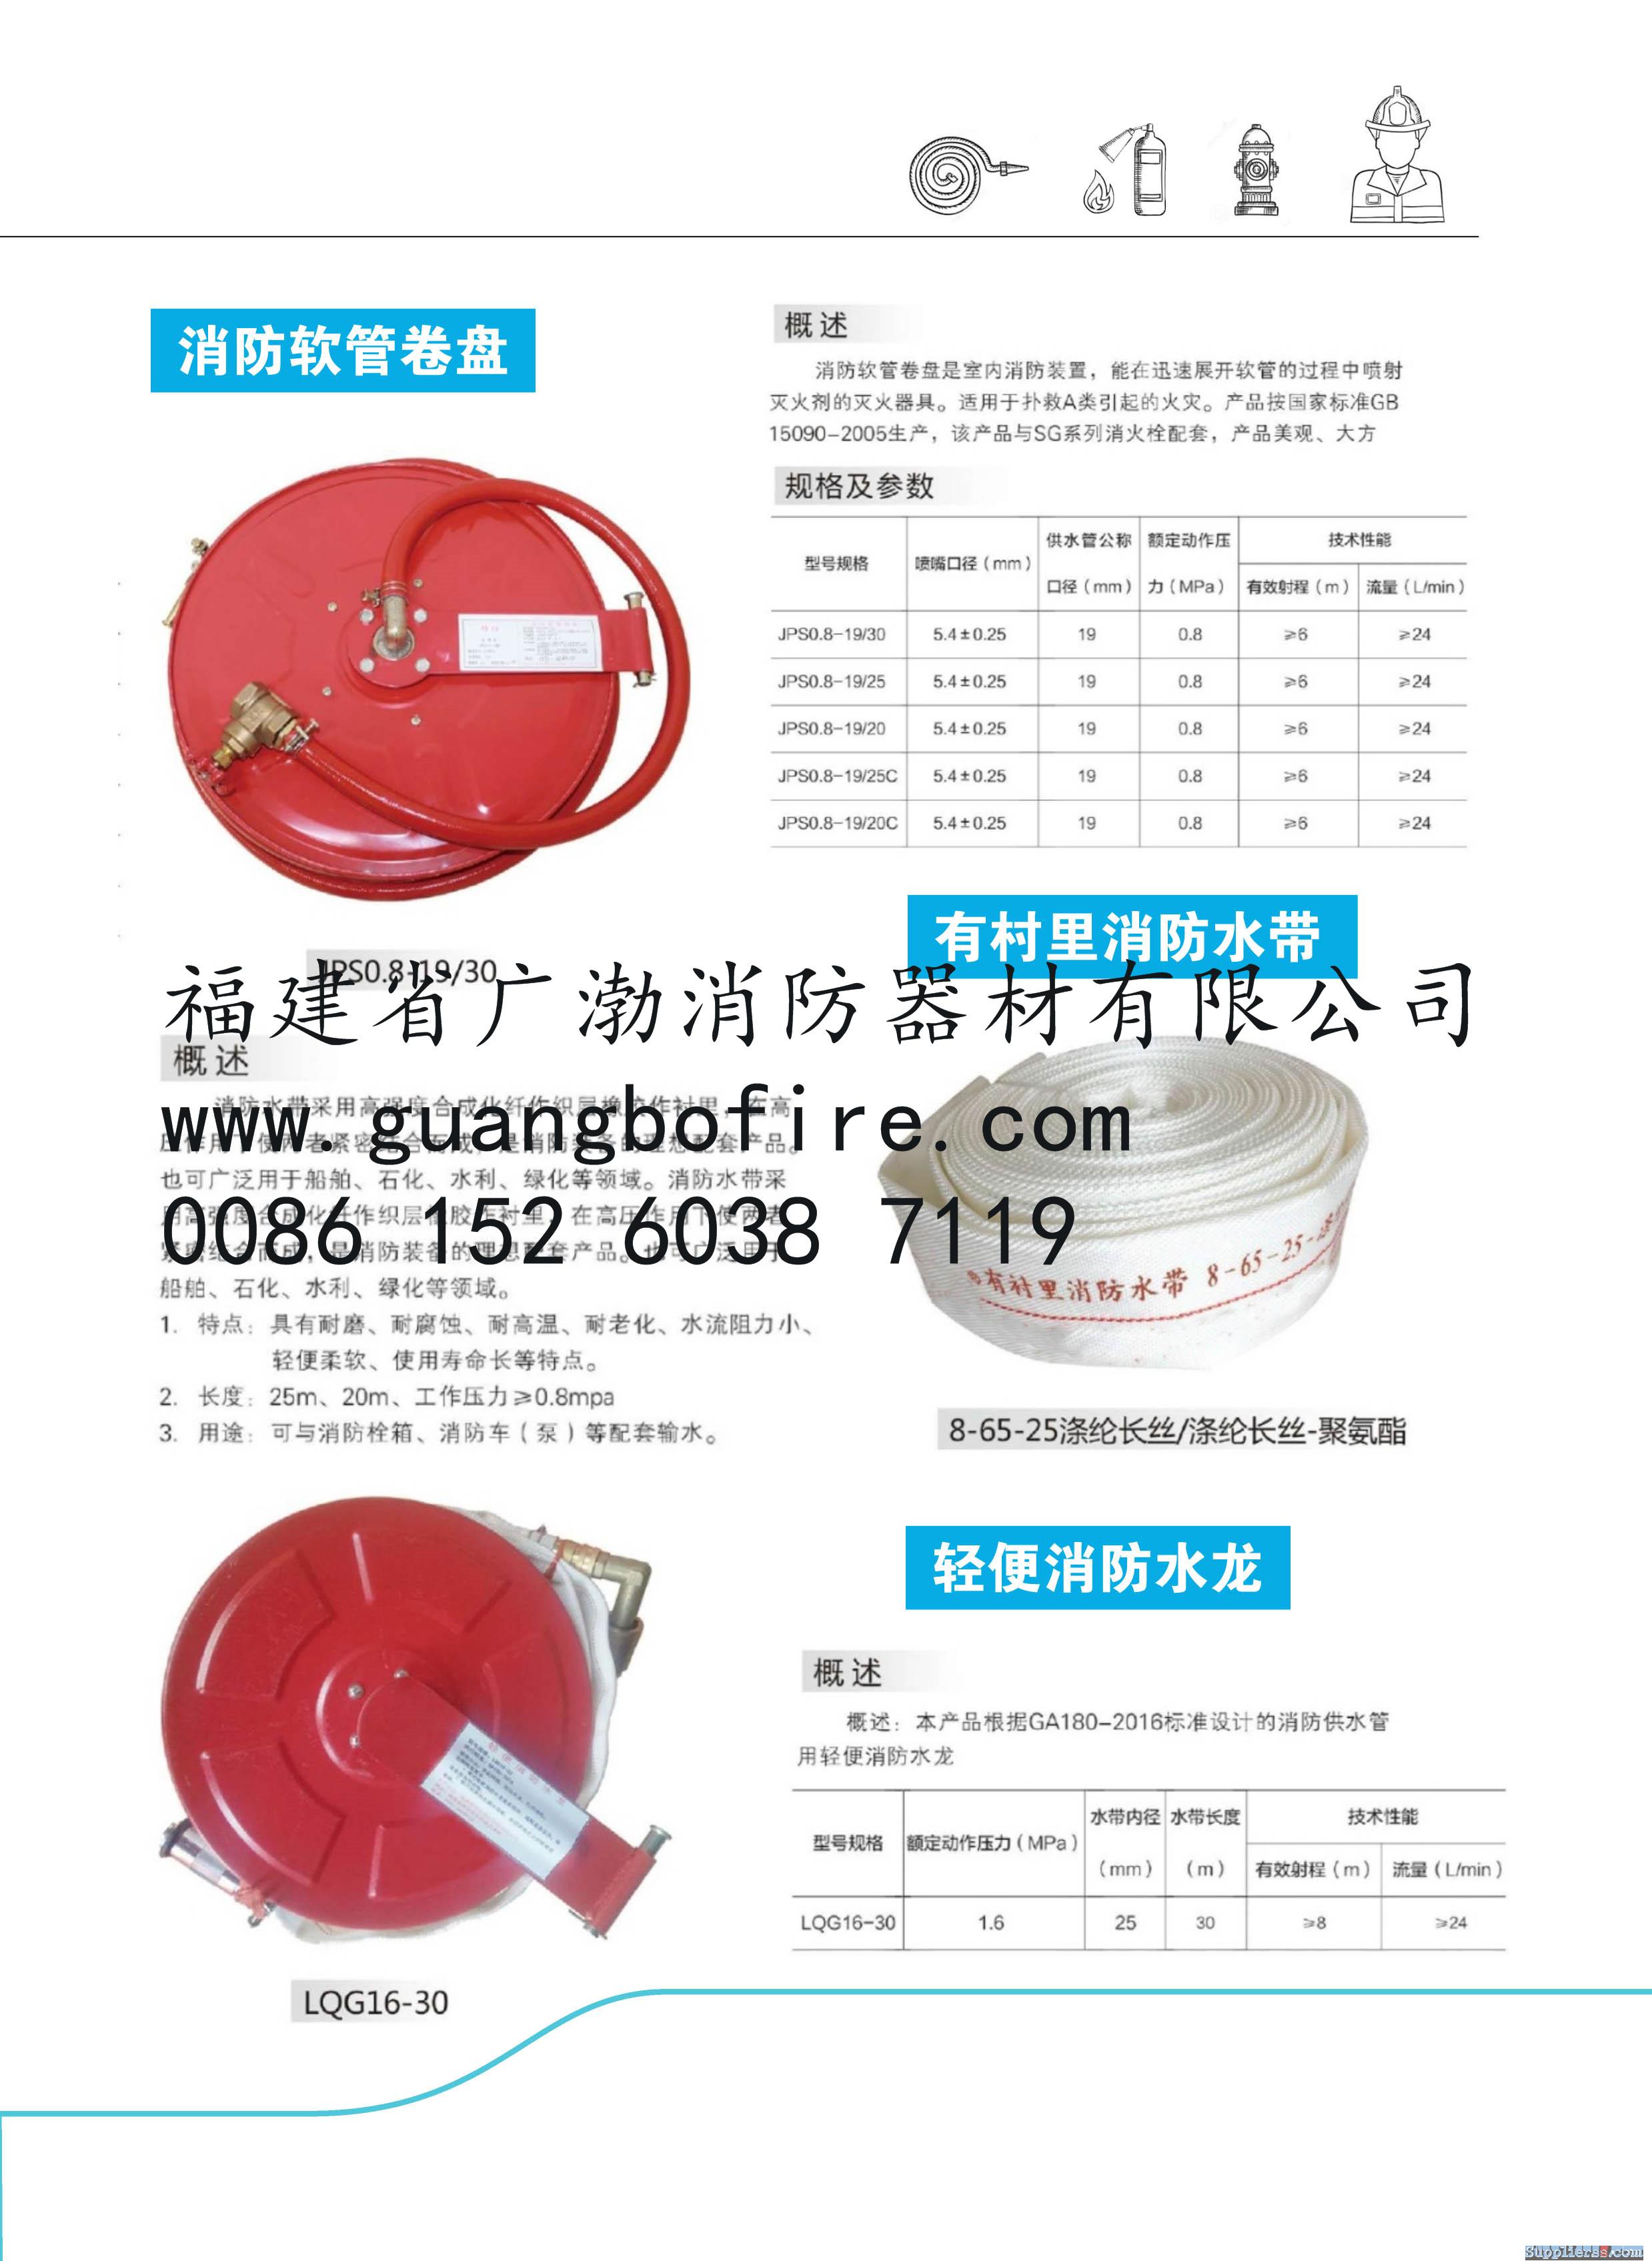 Fire Hose Reel China Fujian Guangbo Brand